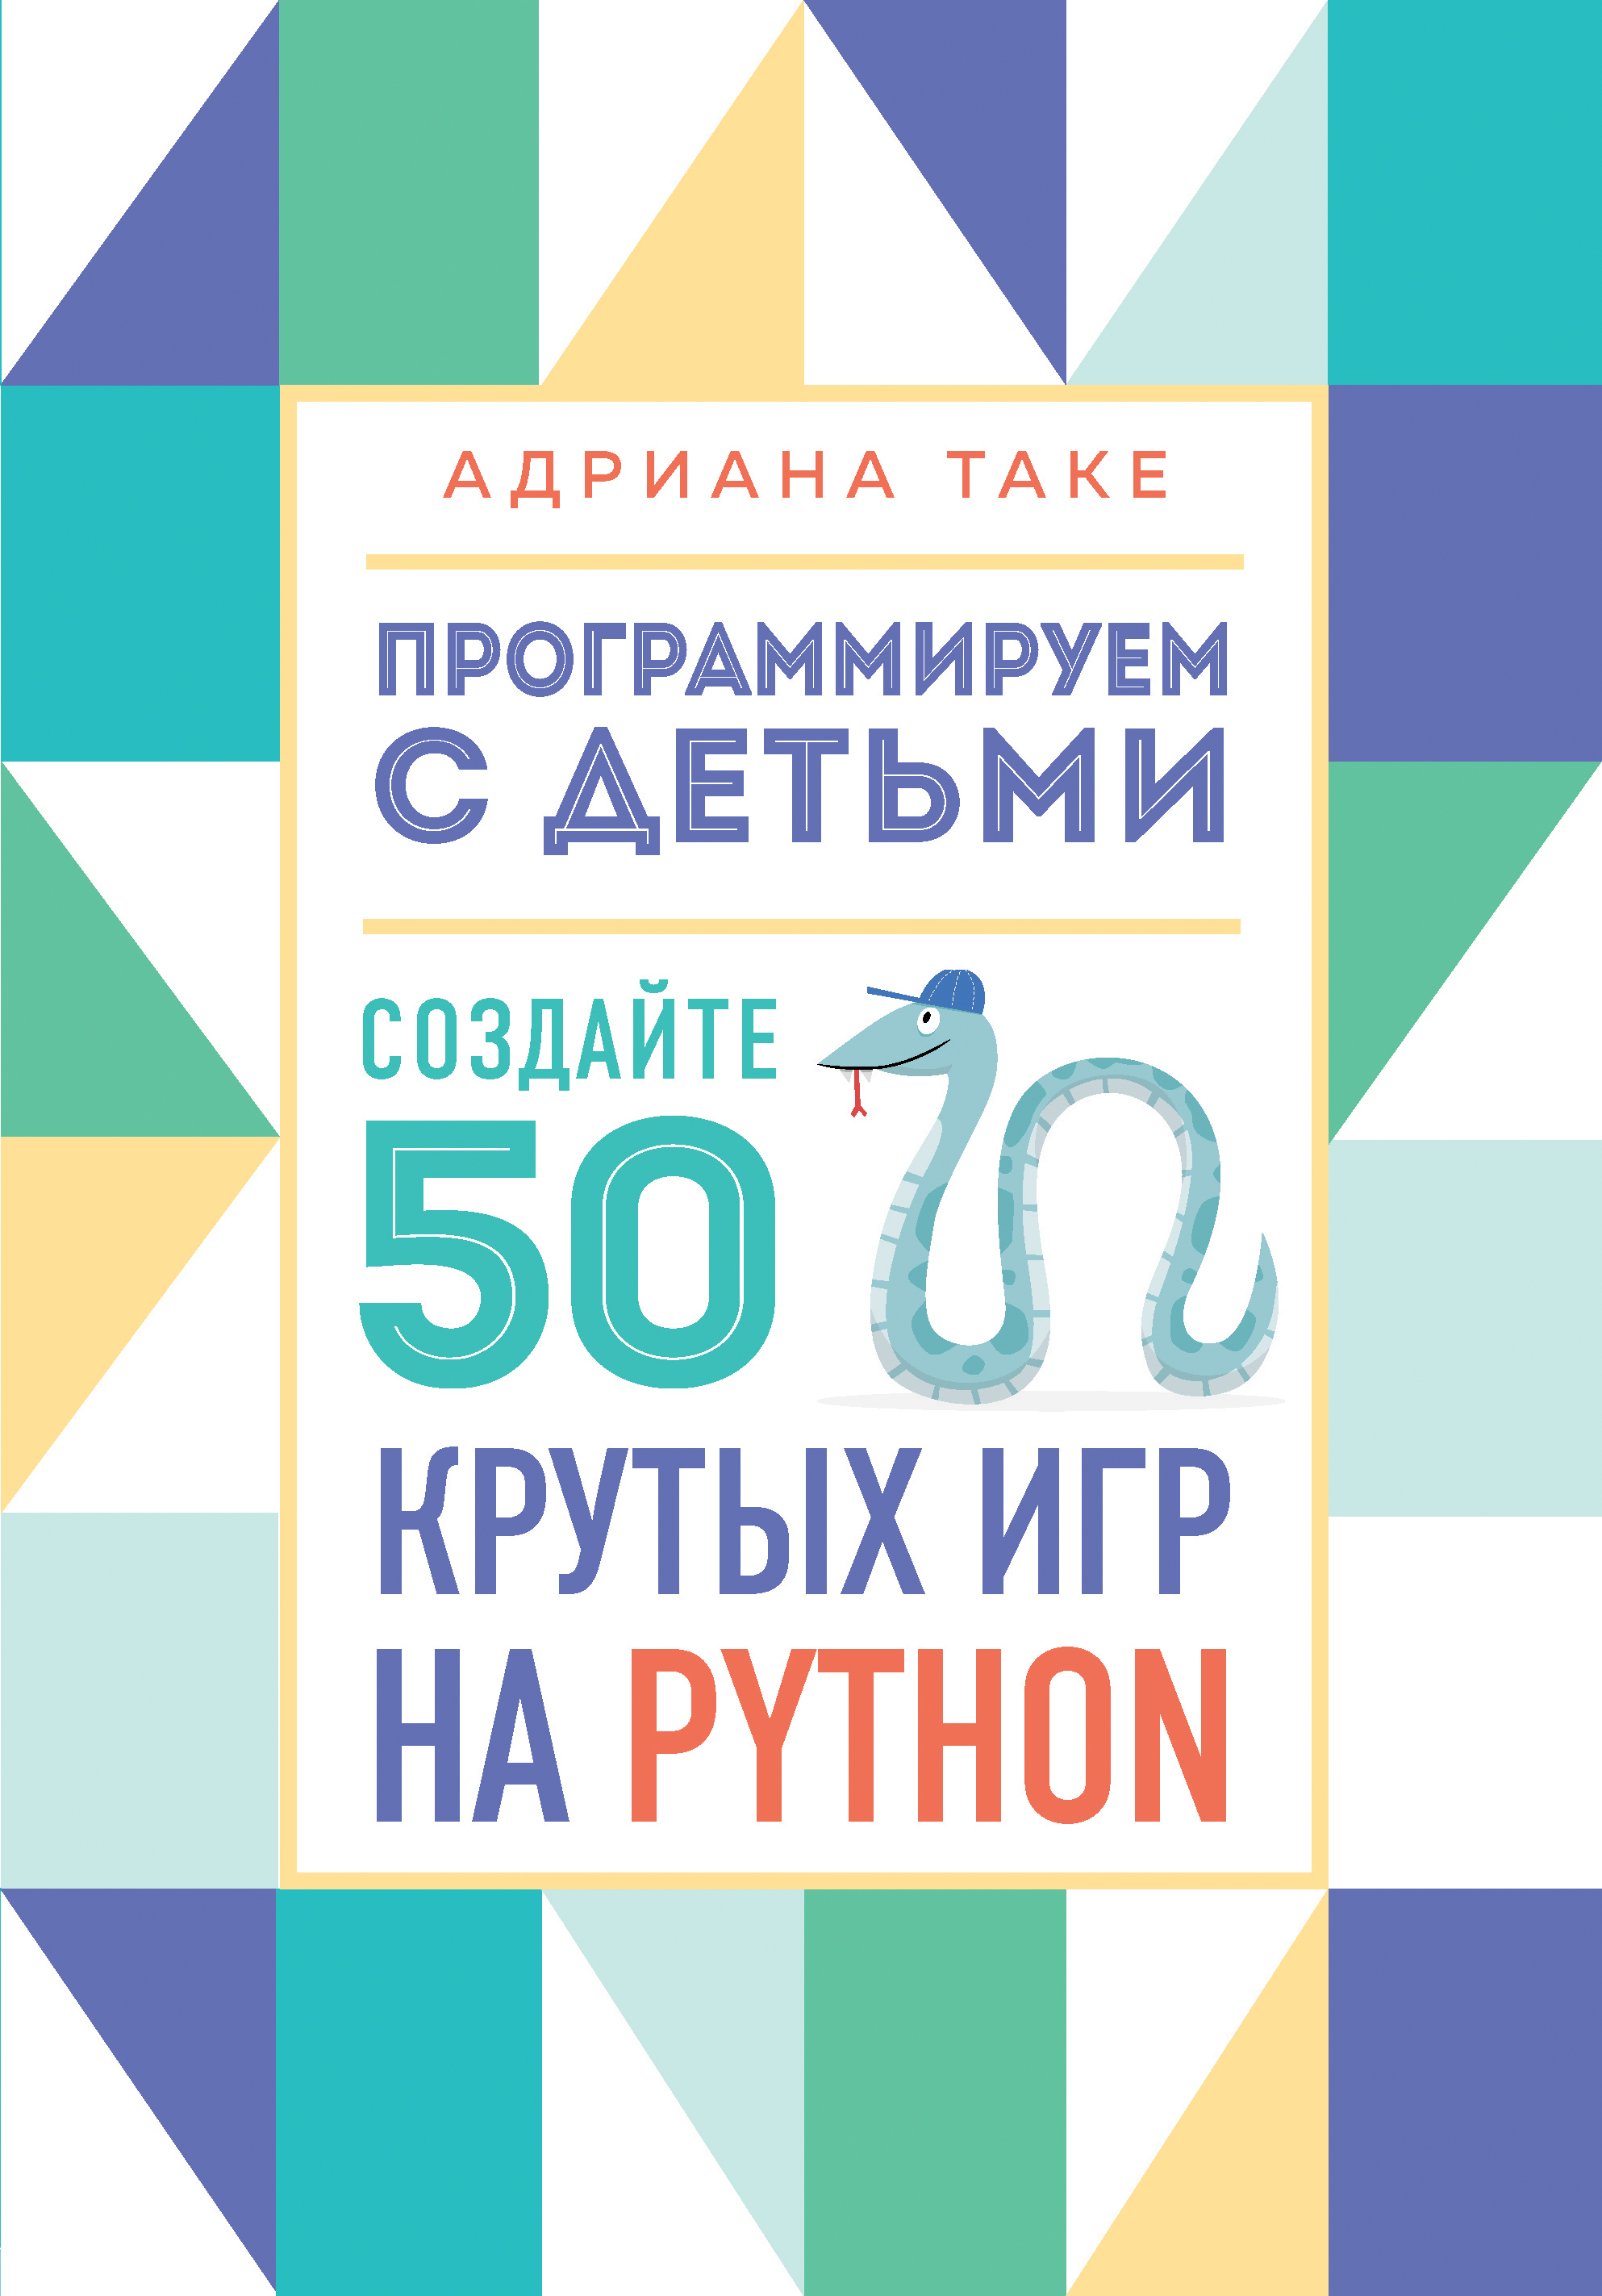  .   .  50    Python 